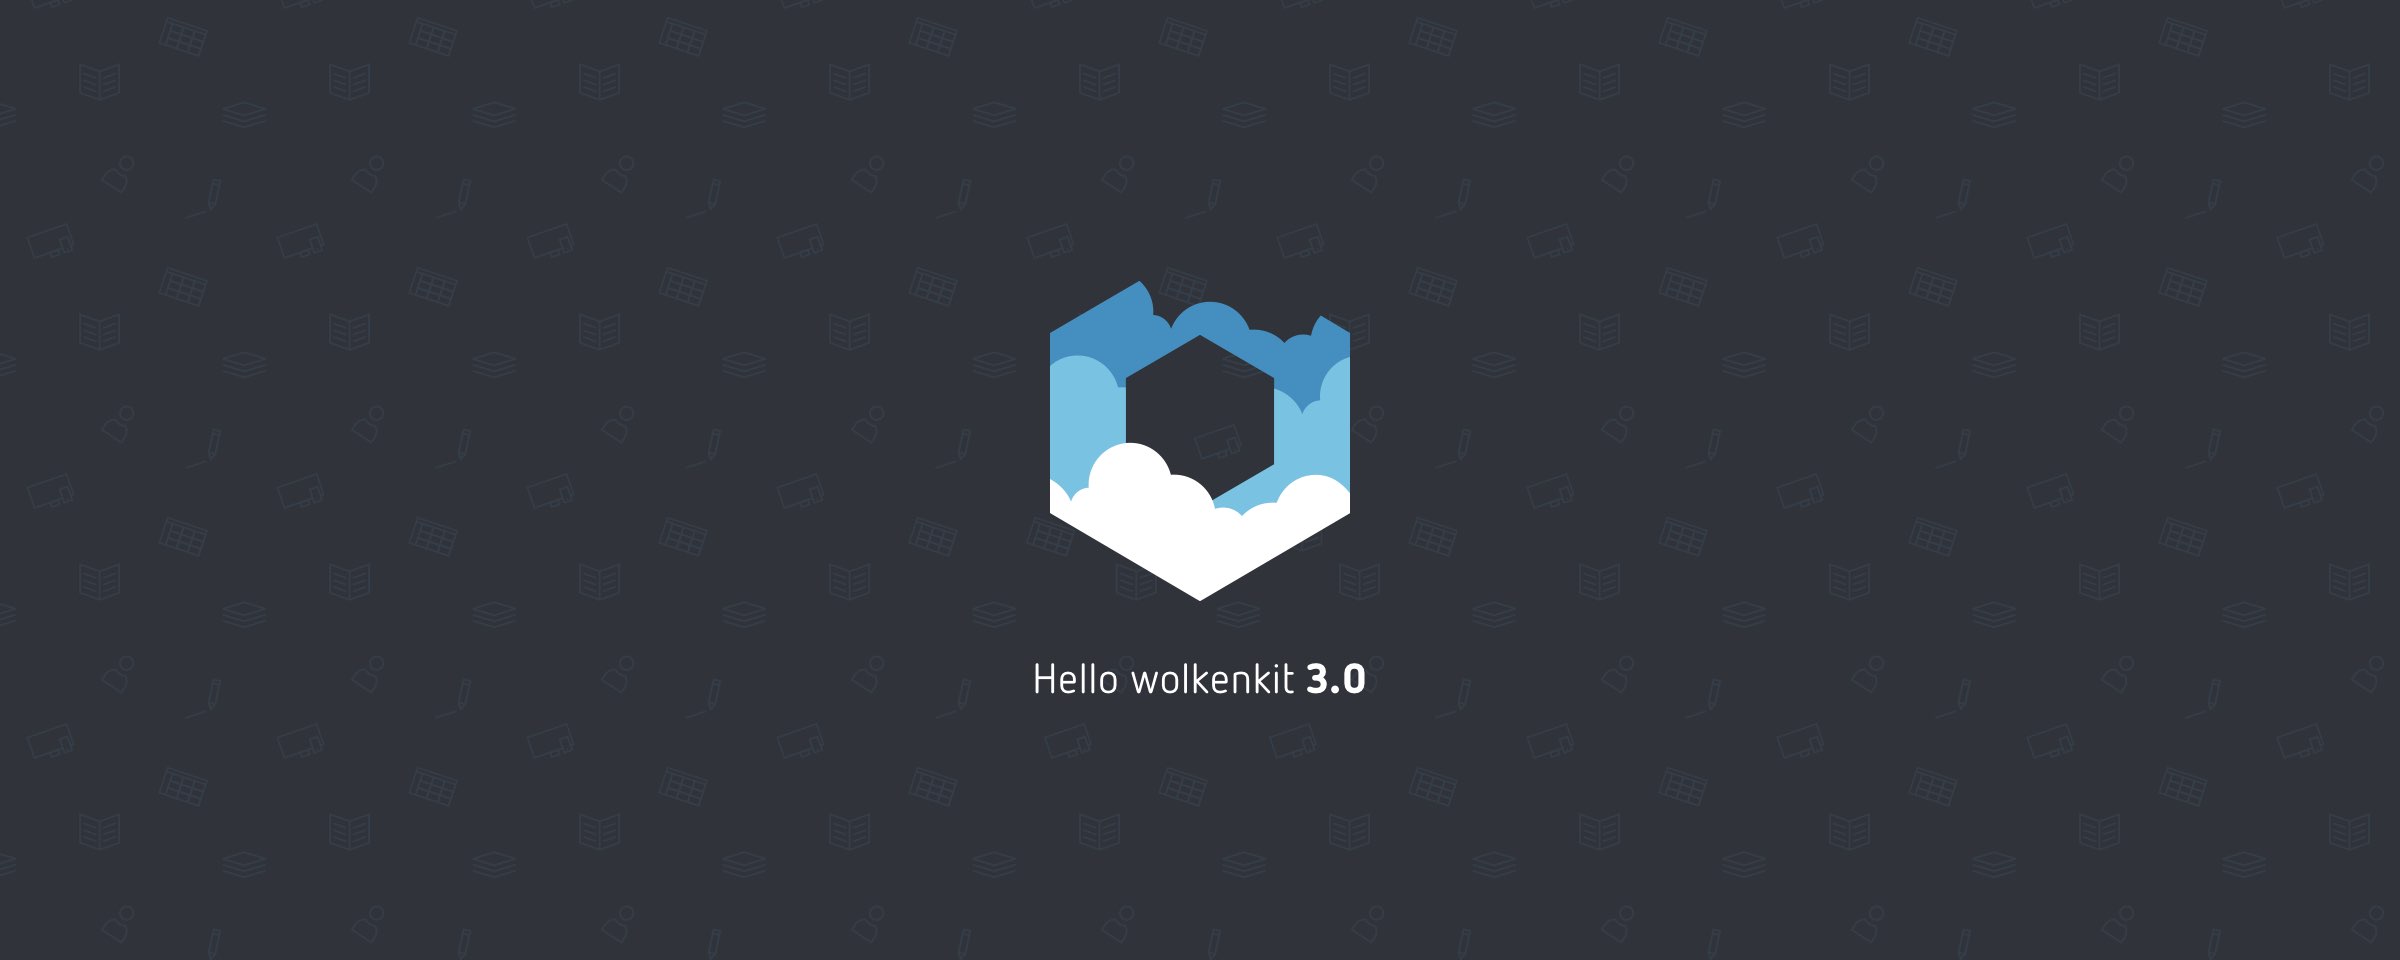 Logo Wolkenkit 3.0